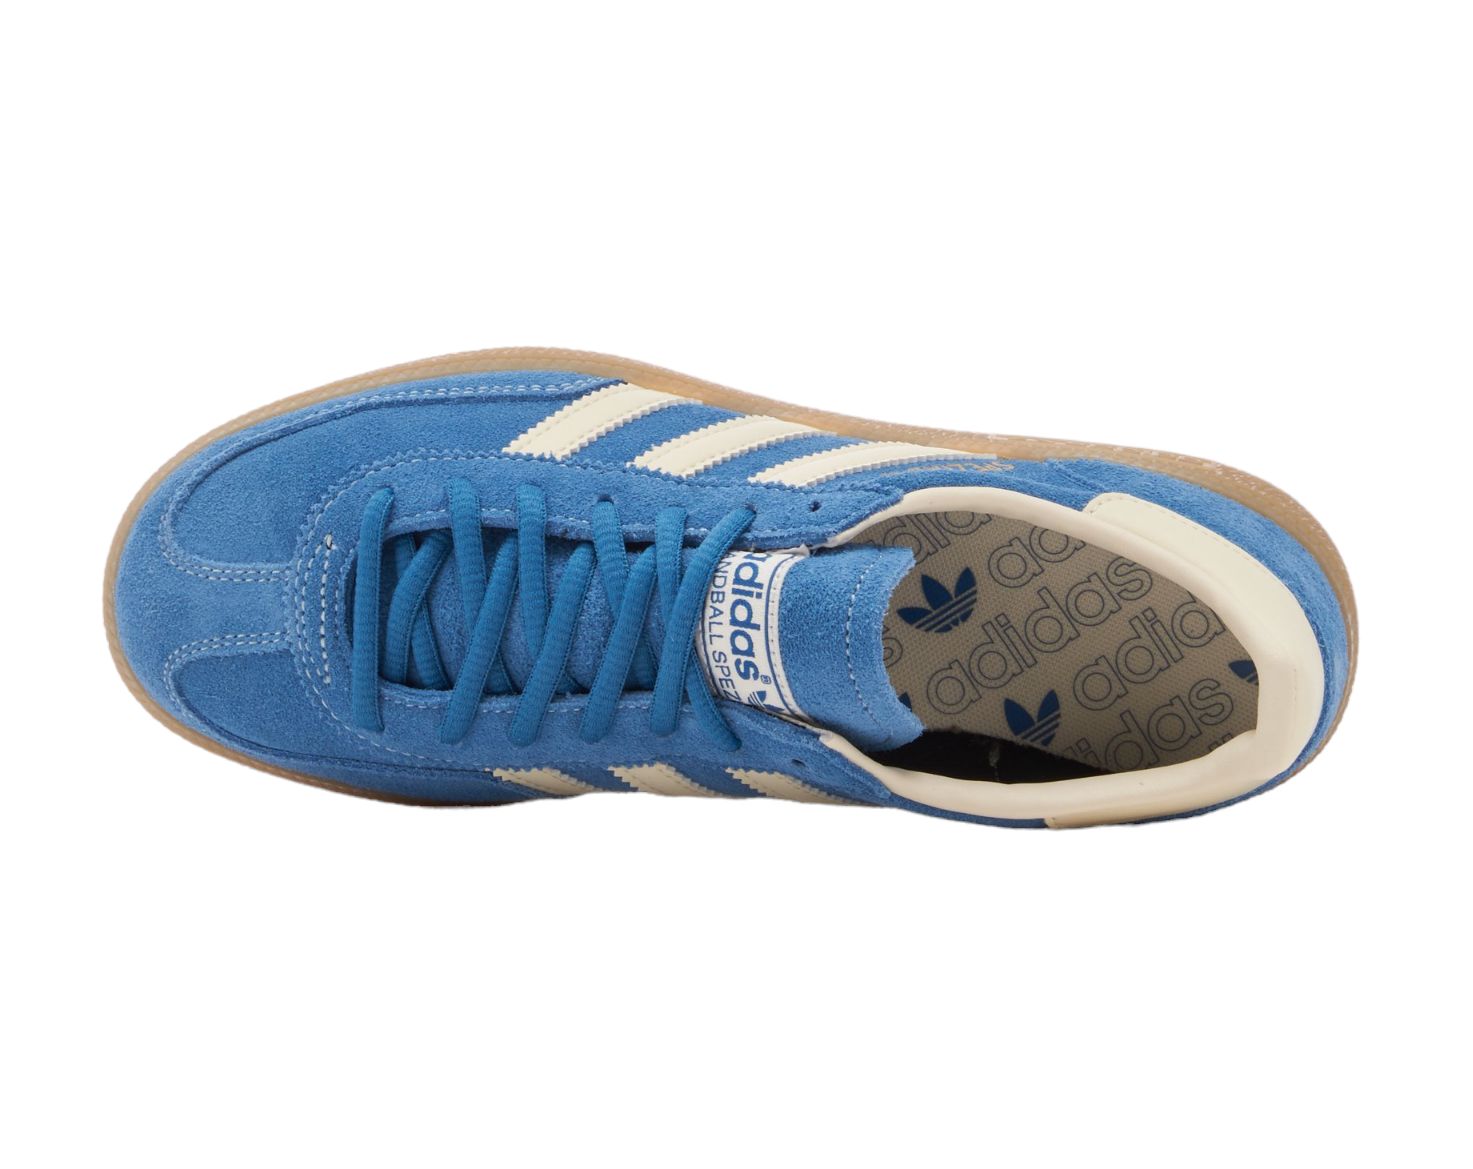 Handball Spezial Shoes Cobalt Blue/Cream White 